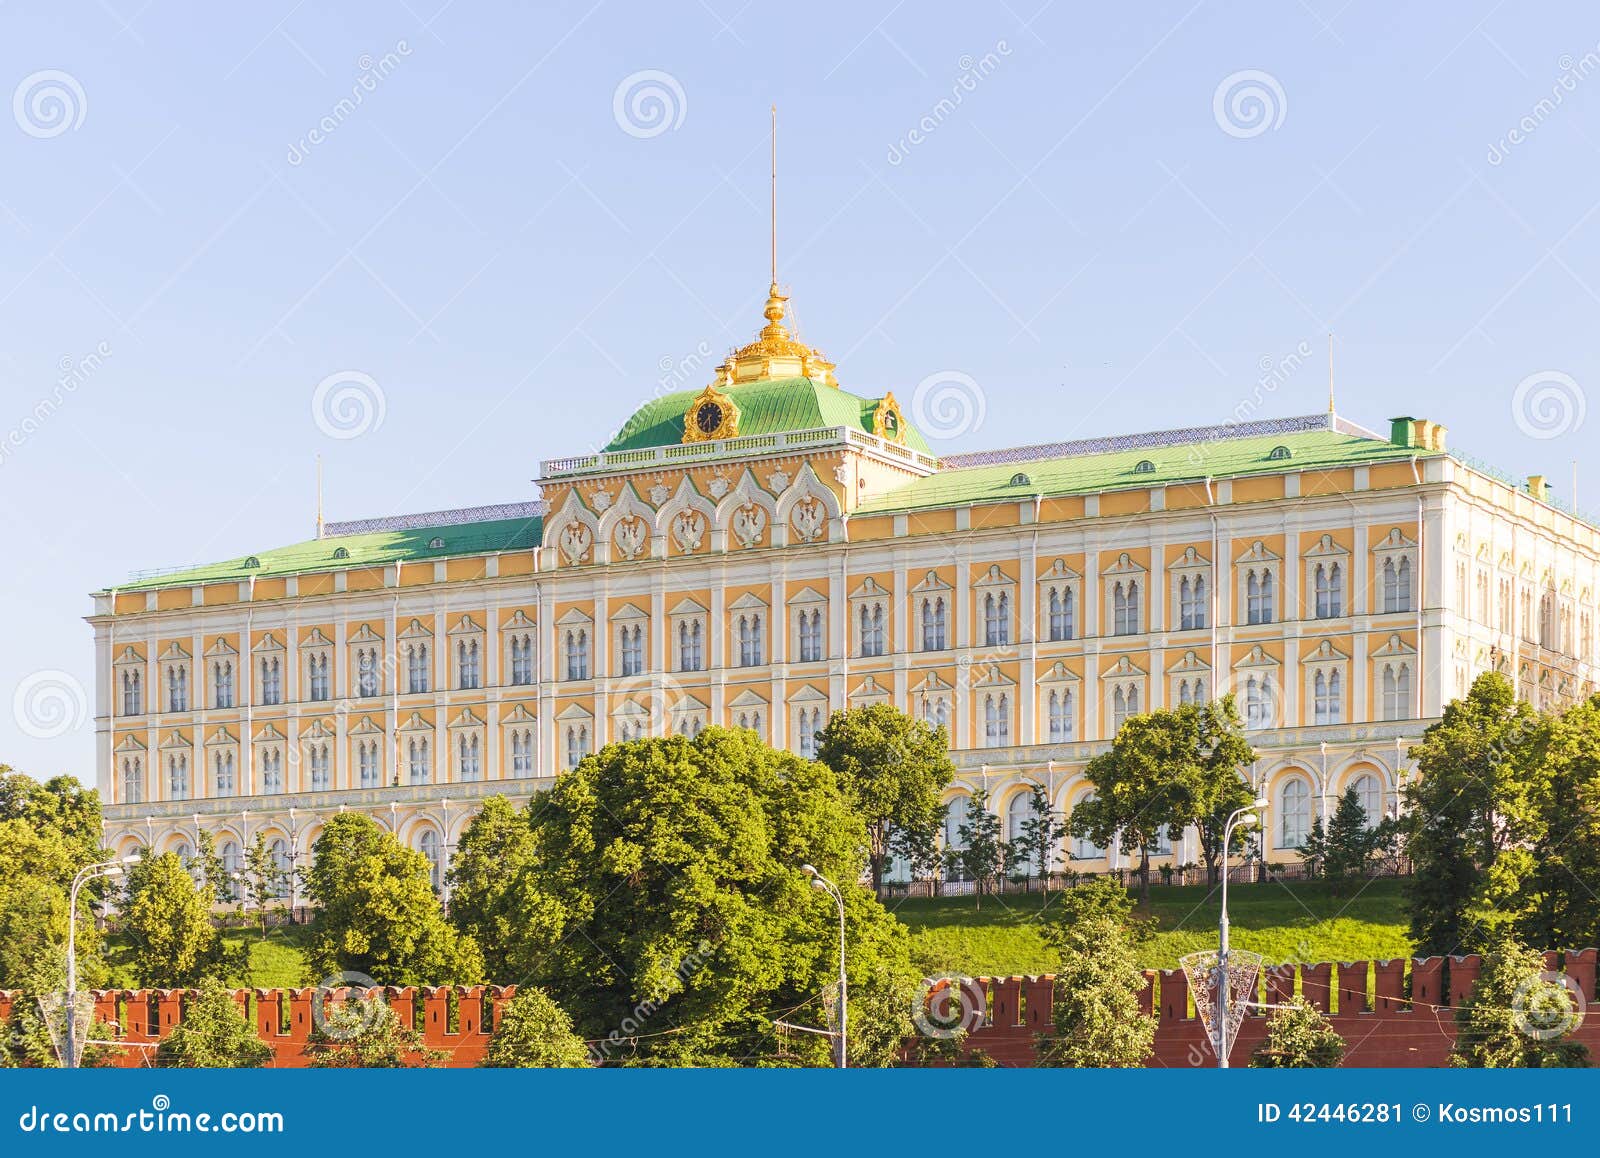 Как выглядит большой кремлевский дворец. Большой Кремлёвский дворец в Москве. Кремль большой Кремлевский дворец. Большой Кремлёвский дворец в Москве резиденция президента. Кремль большой Кремлевский дворец здание.